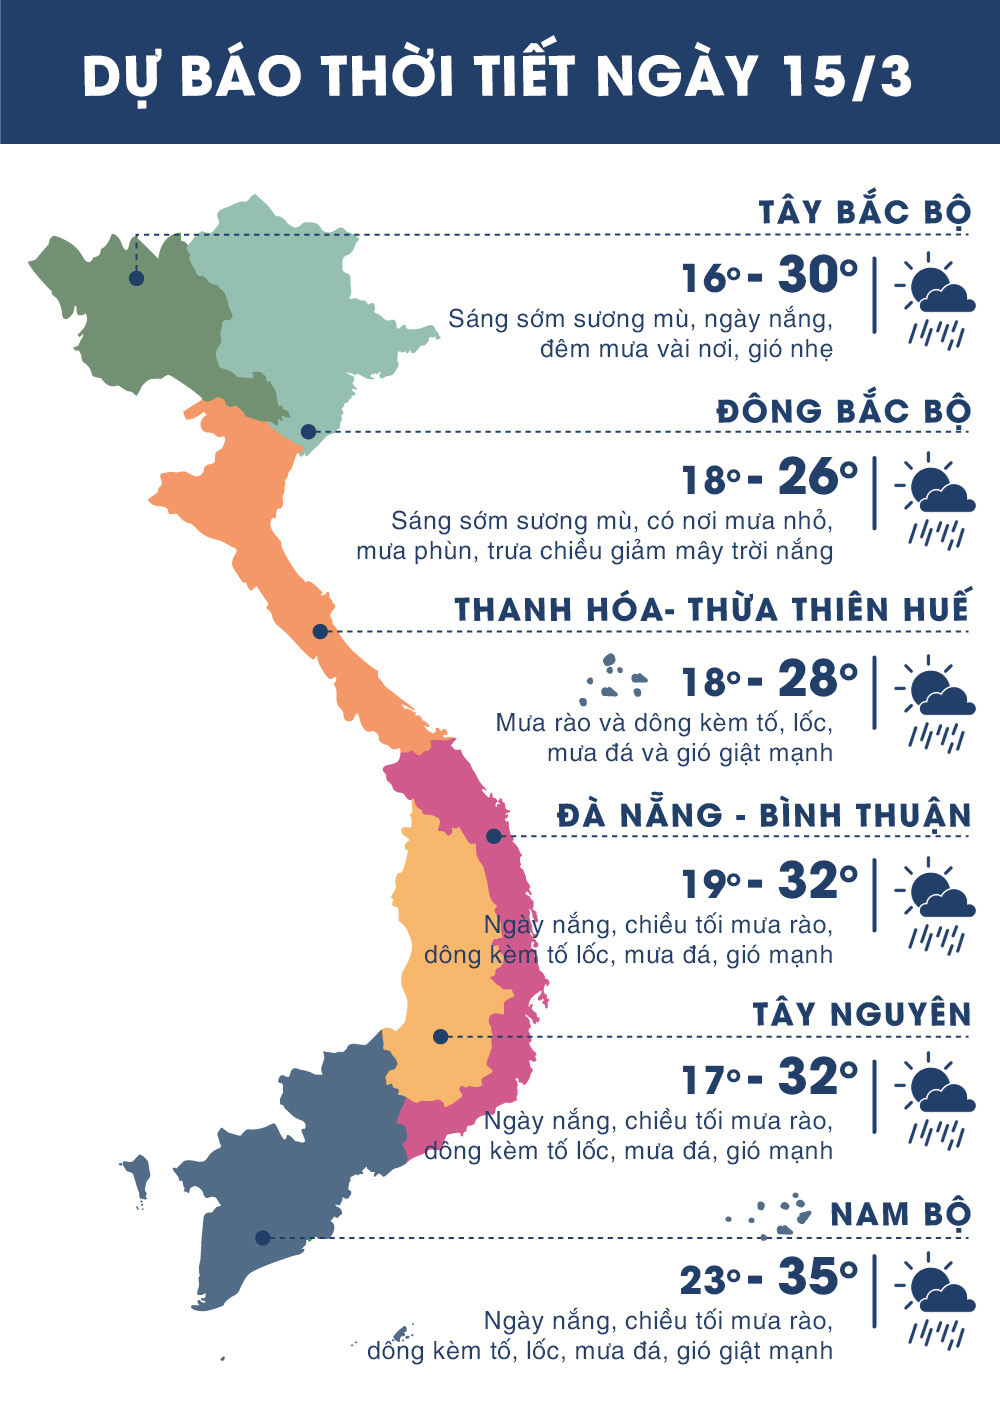 Dự báo thời tiết các vùng trên cả nước ngày 15/3. (Ảnh: Zing.vn).